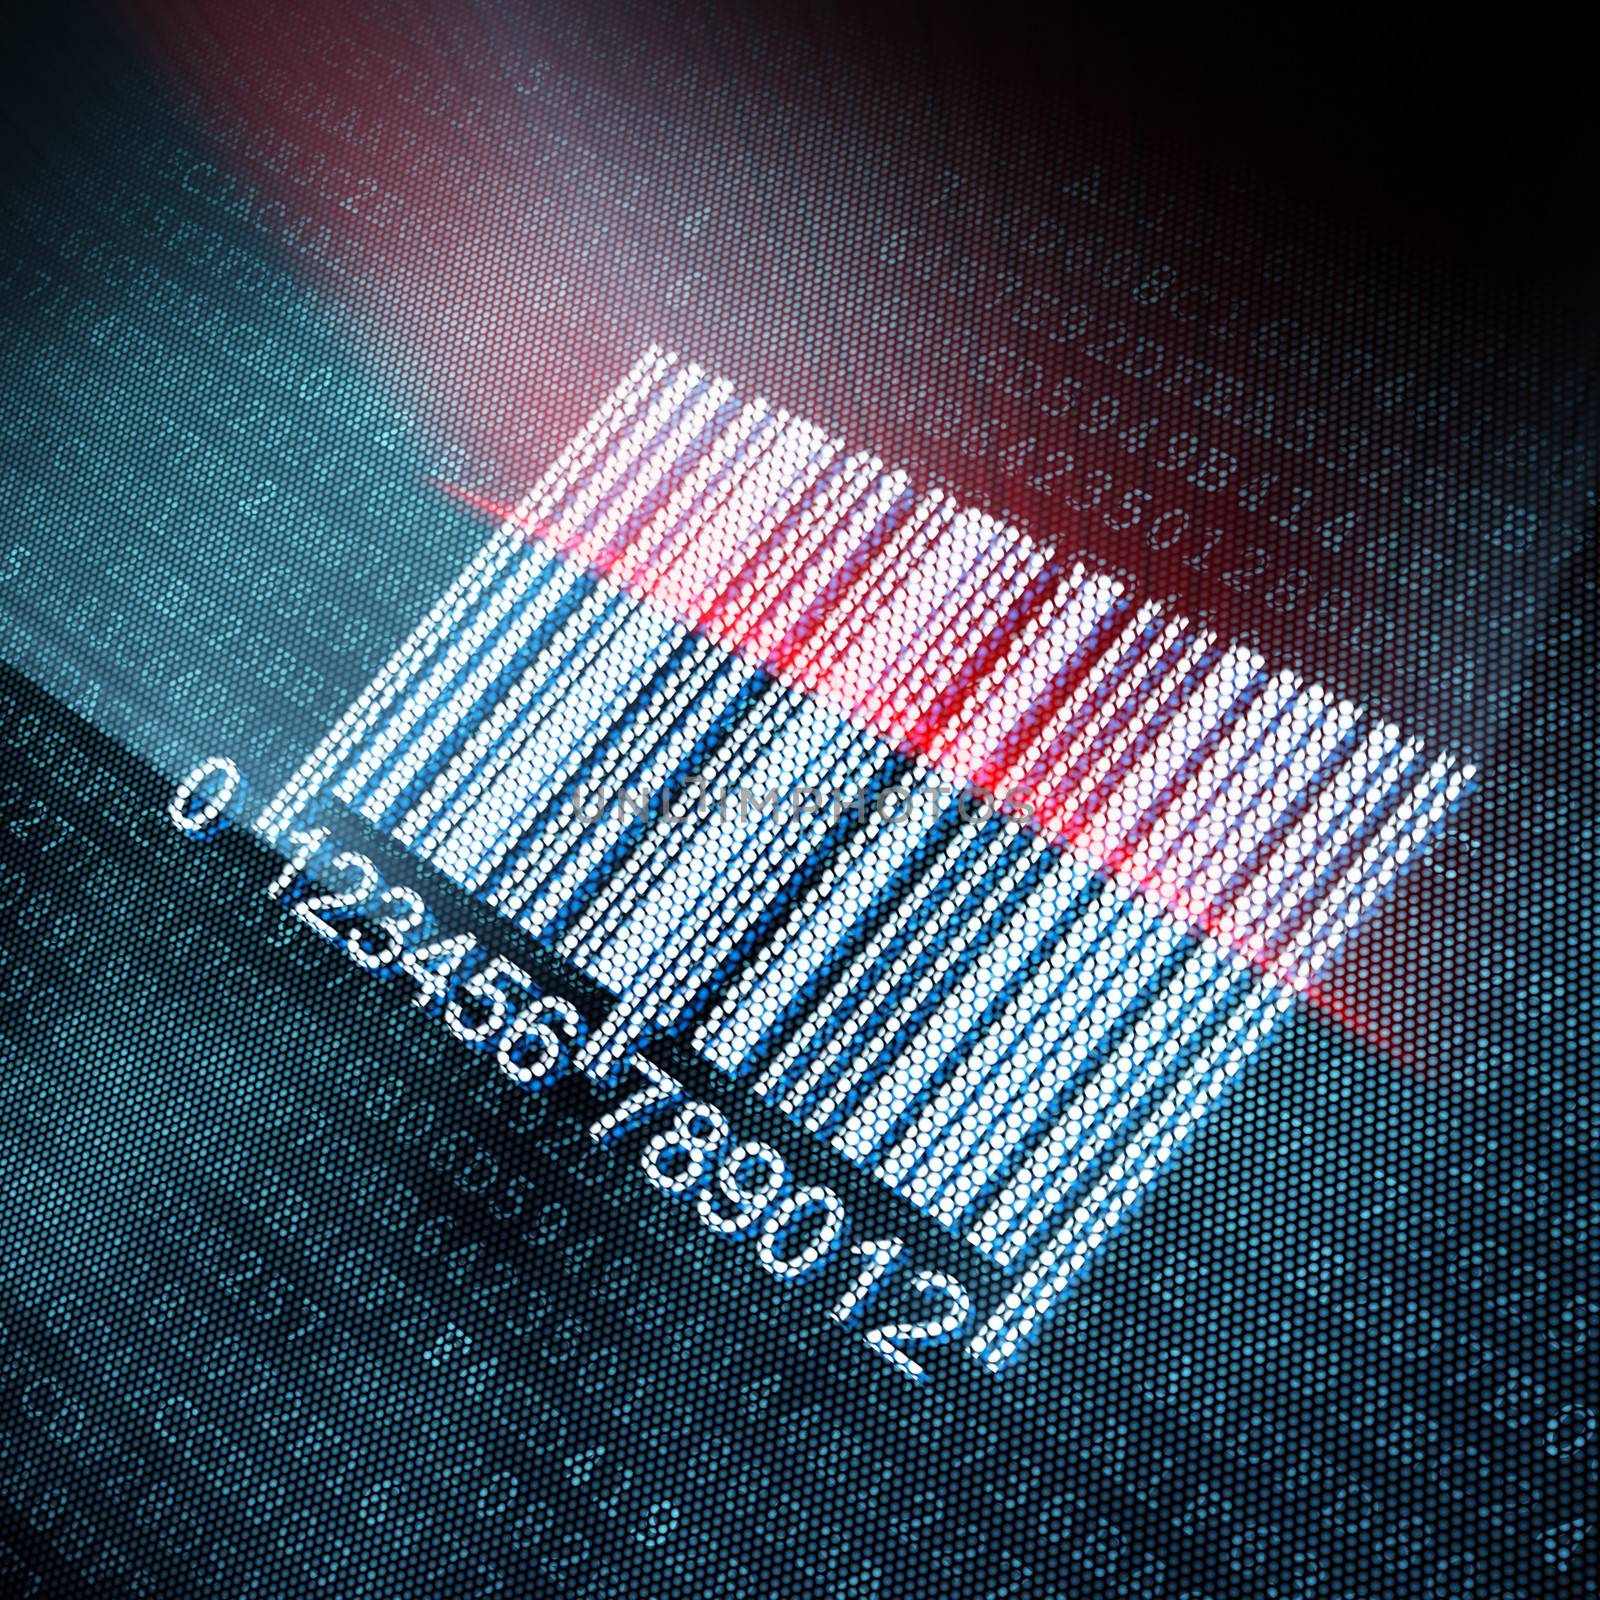 Pixeled barcode illustration, 3d render